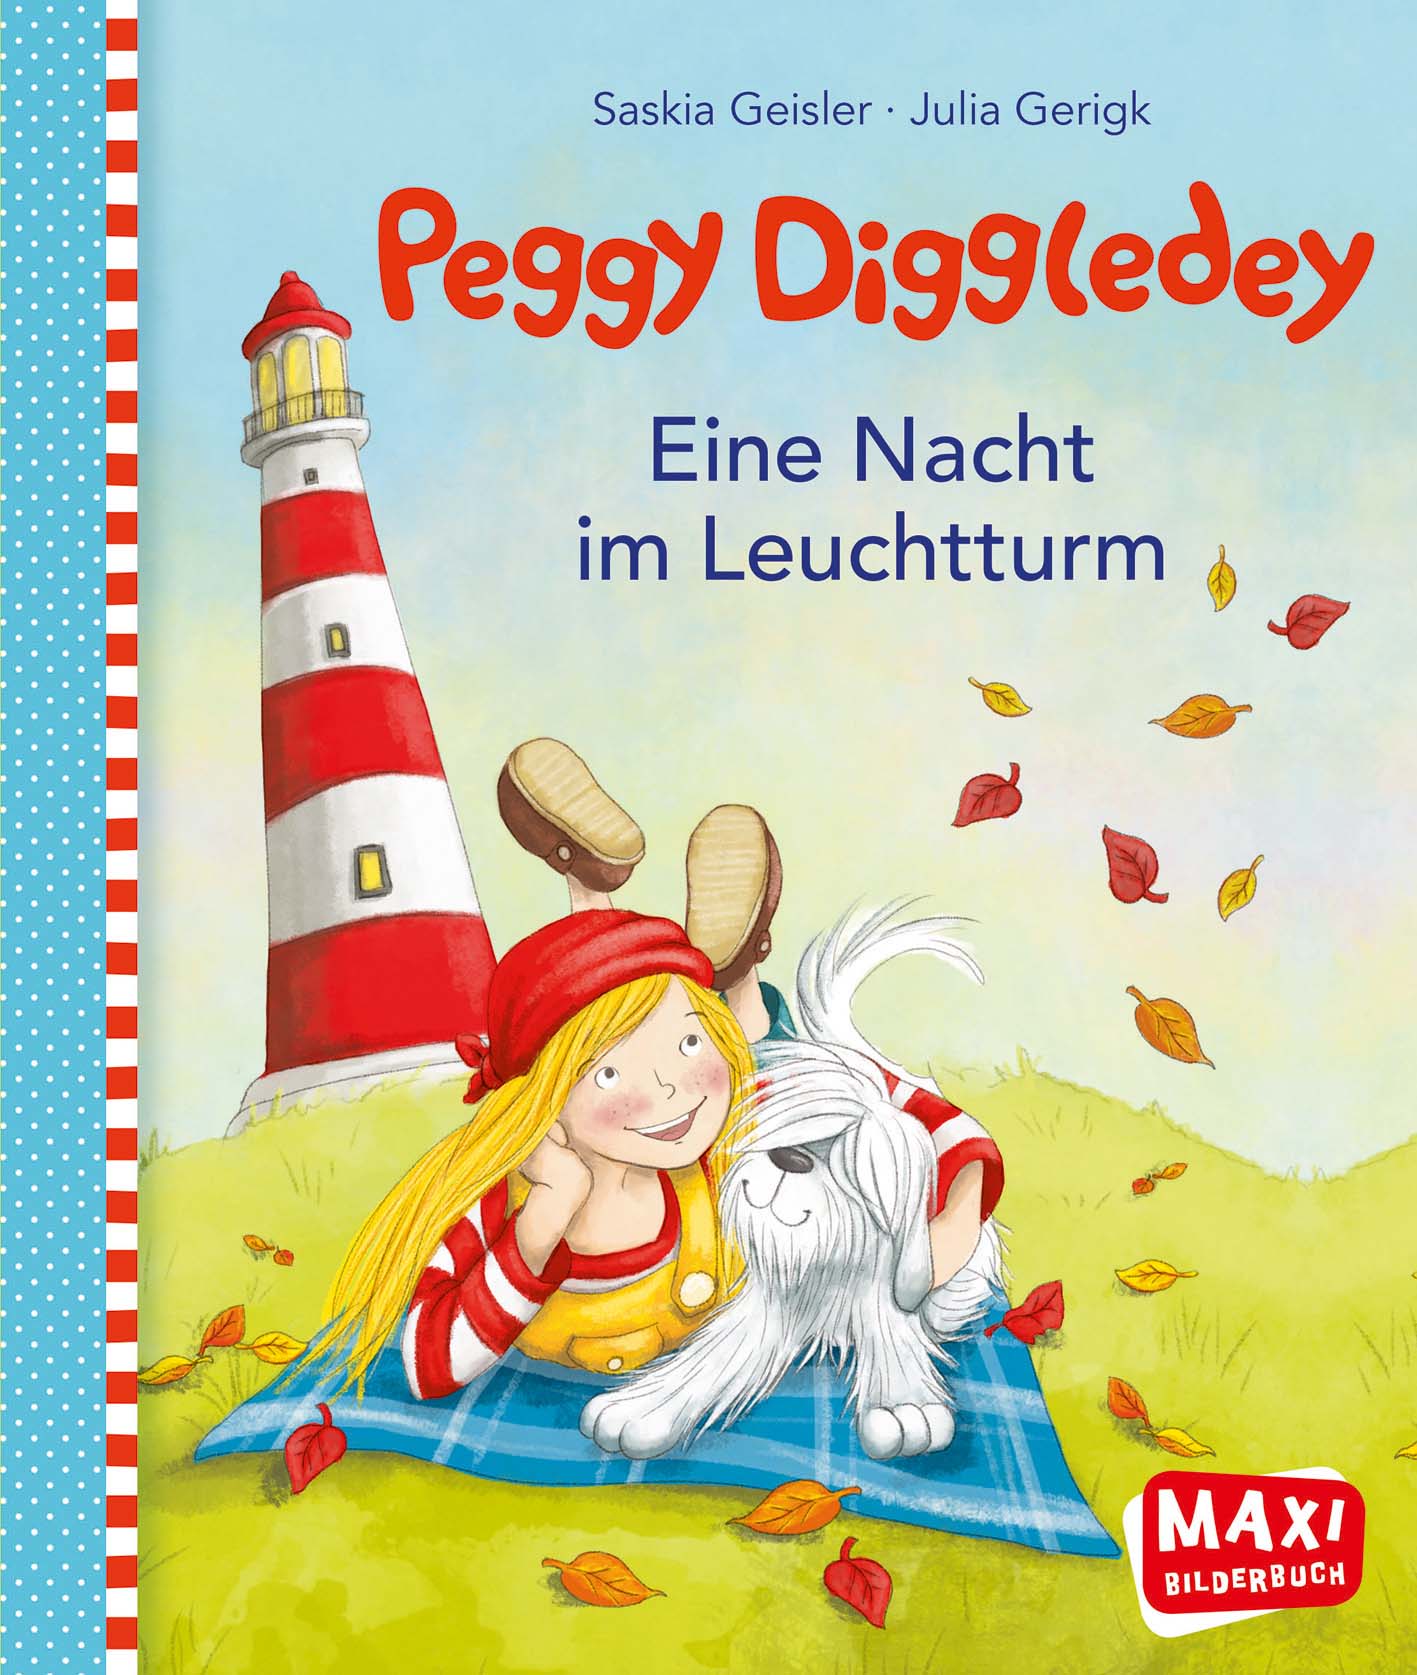 Maxibuch Peggy Diggledey - Eine Nacht im Leuchtturm